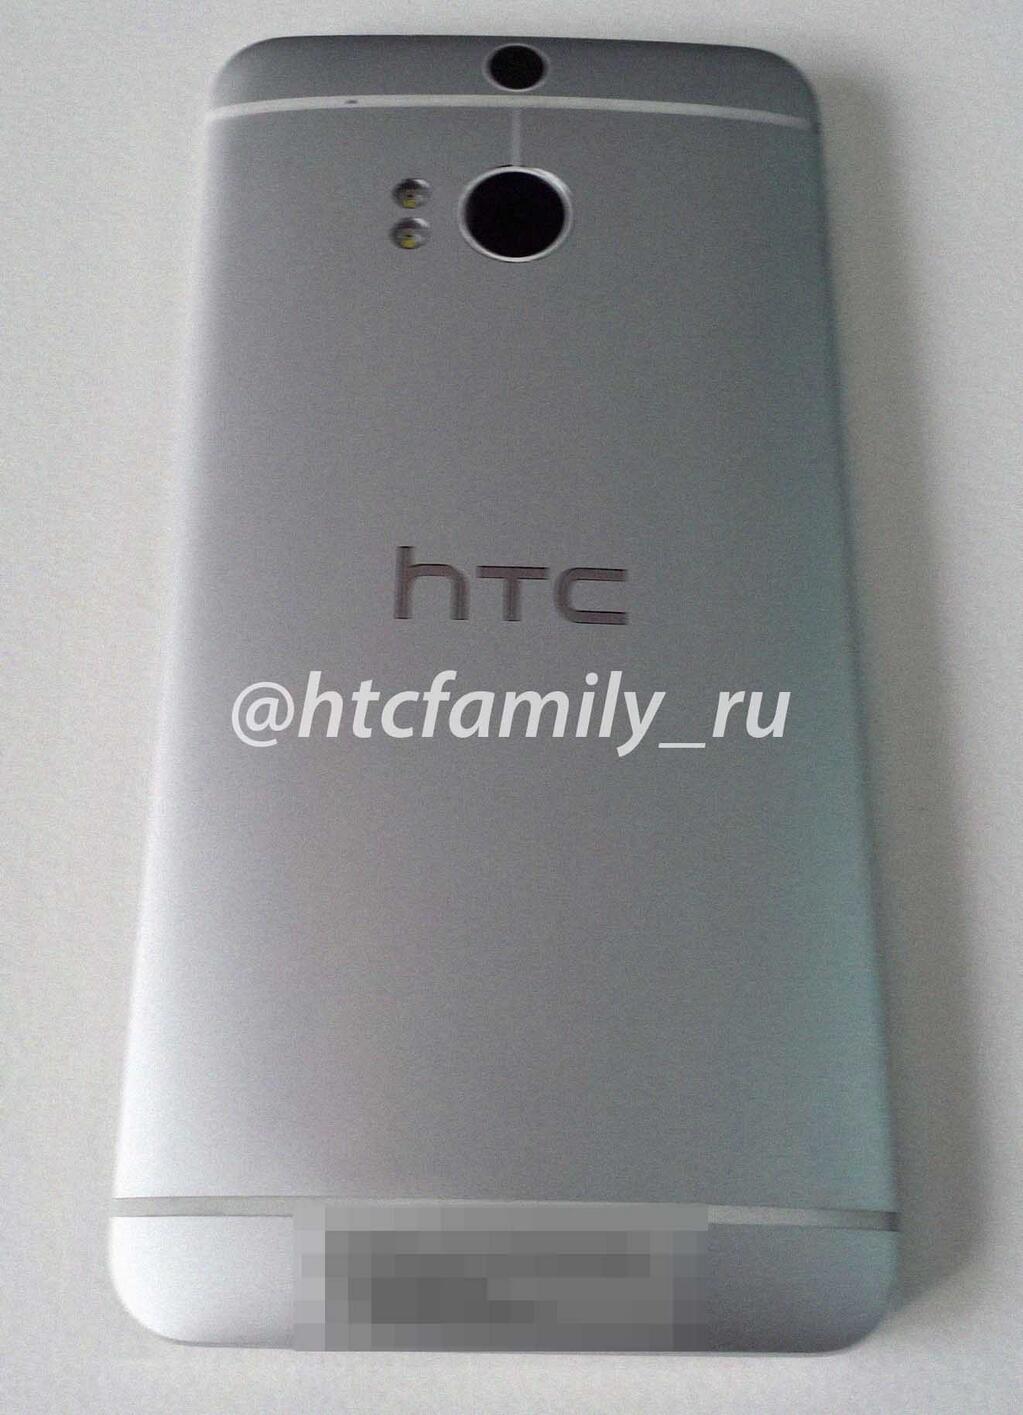 Dette skal være HTCs neste toppmodell. Det virker imidlertid lite trolig at den dukker opp på MWC.Foto: @htcfamily_ru